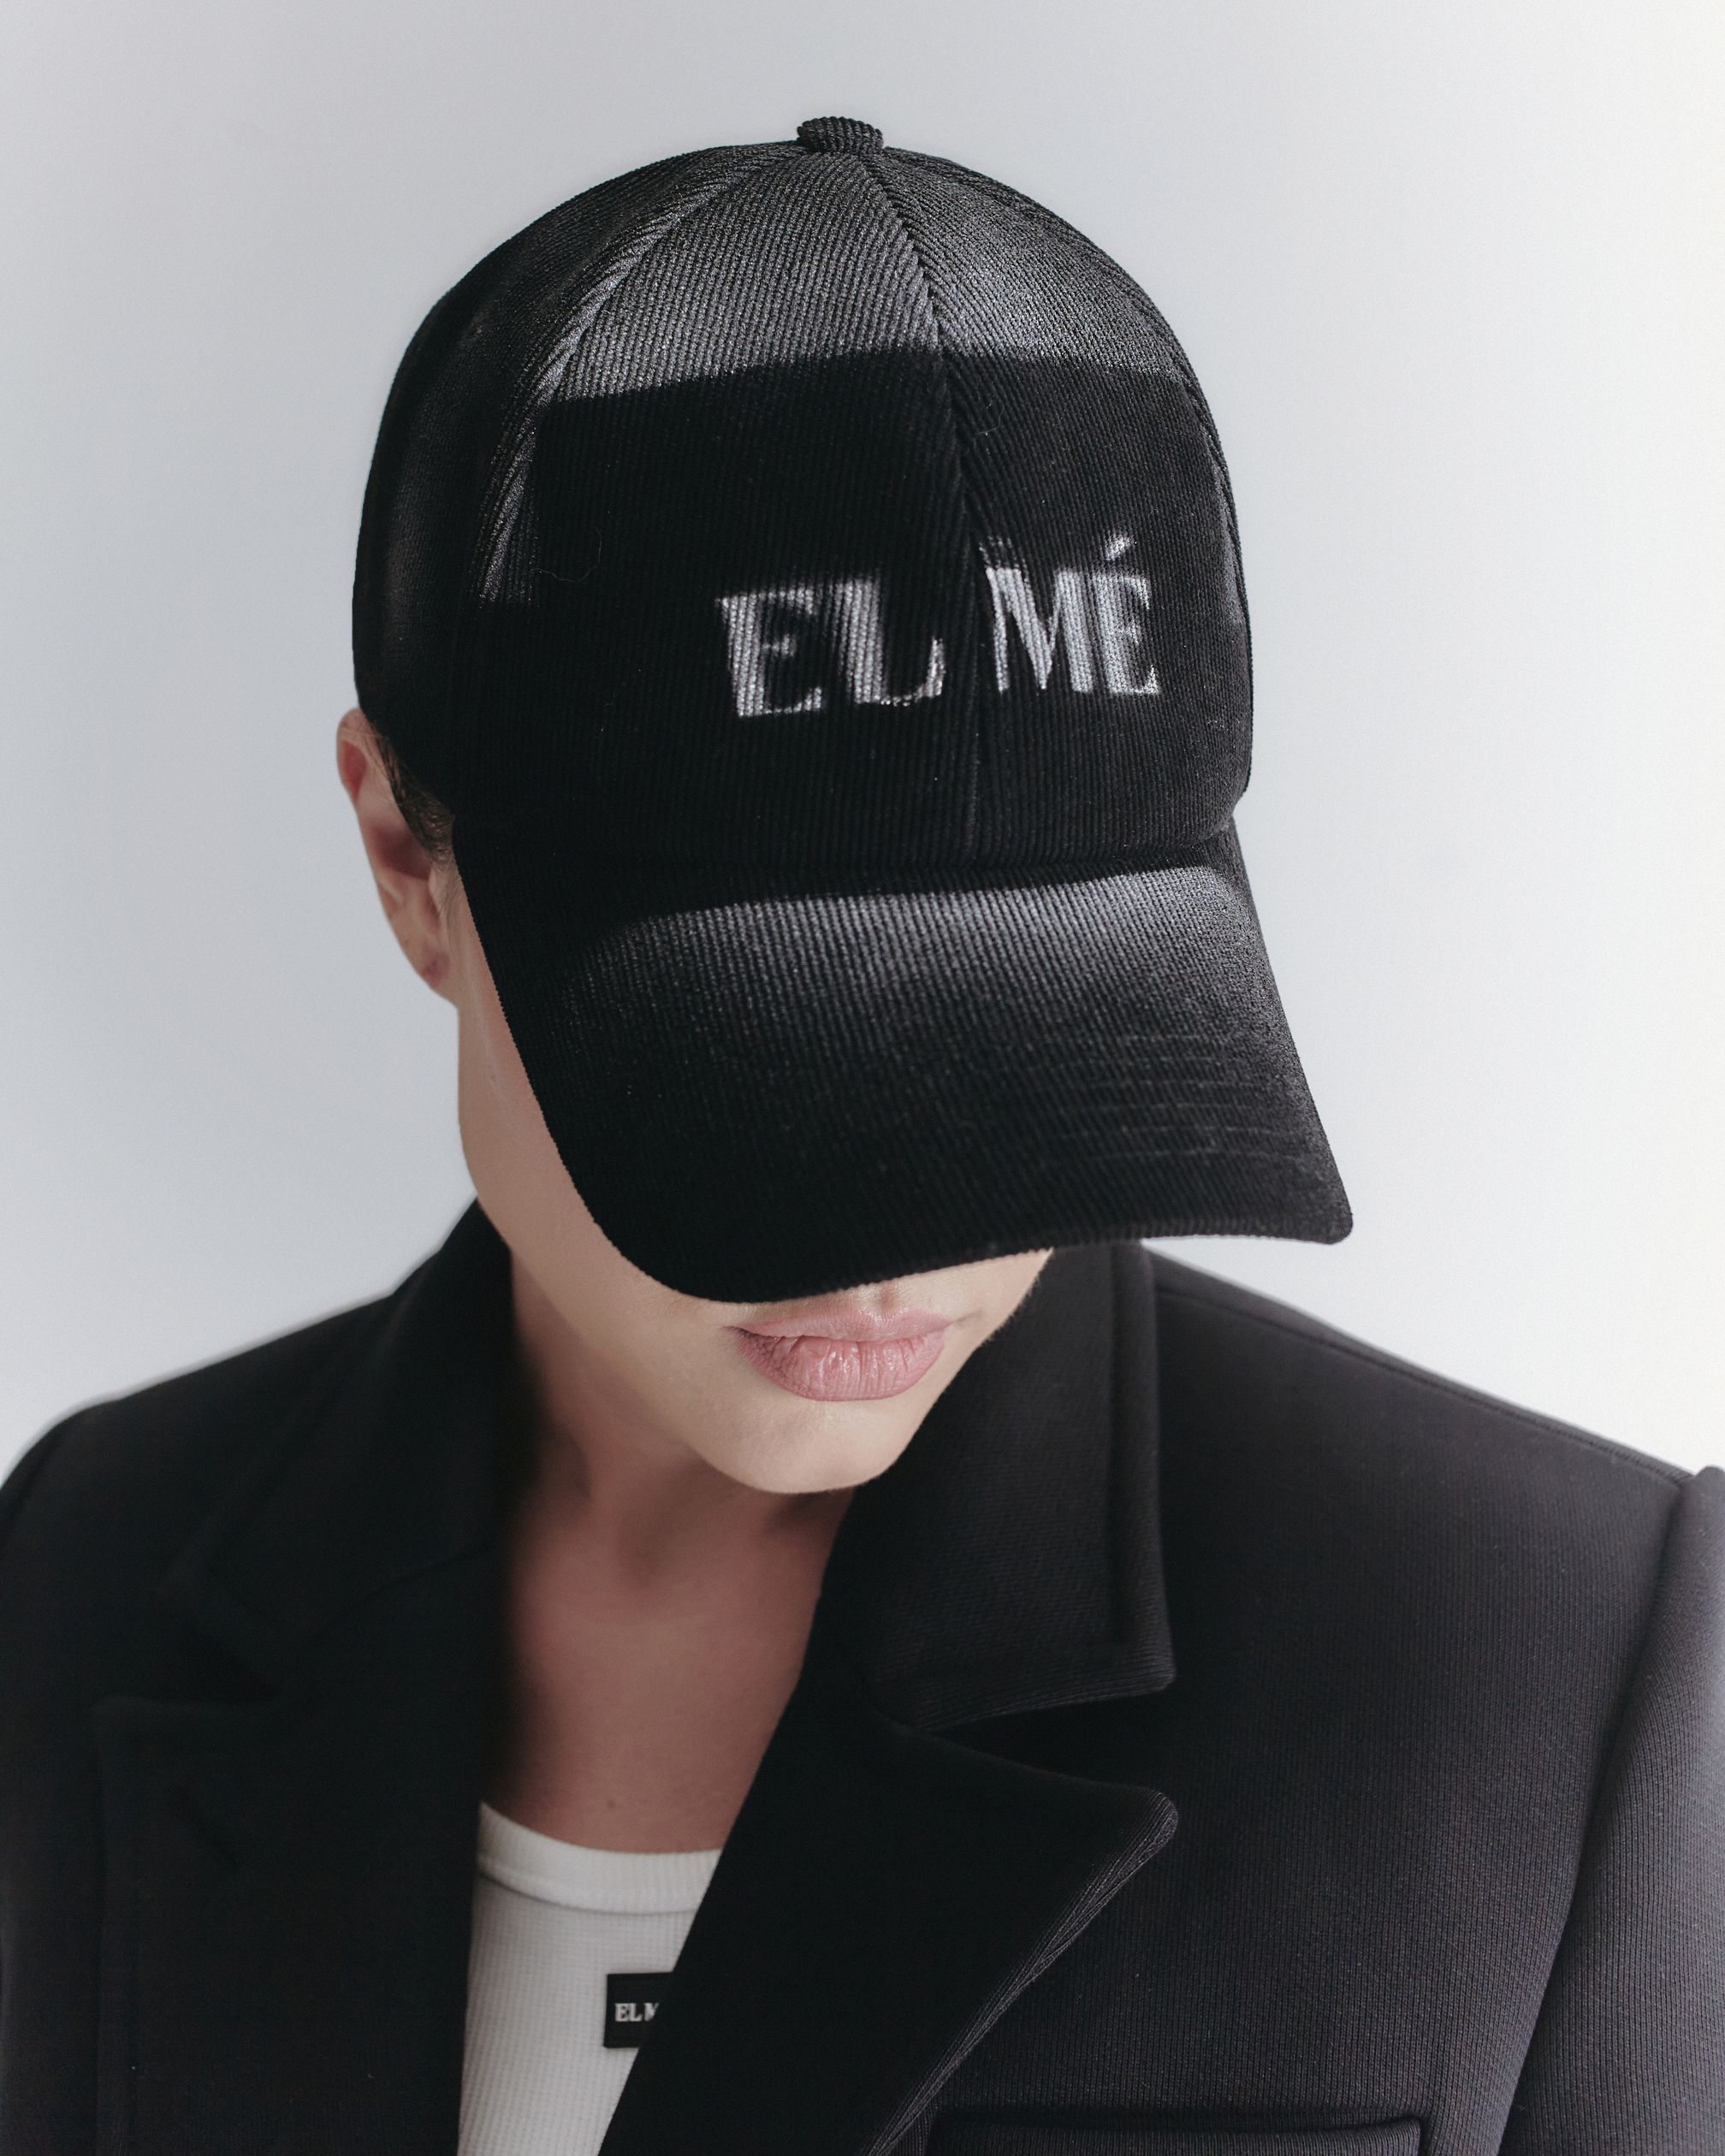 Кепка унисекс черная от бренда одежды ELME в Москве. Шоу рум в ГУМ (bosco)